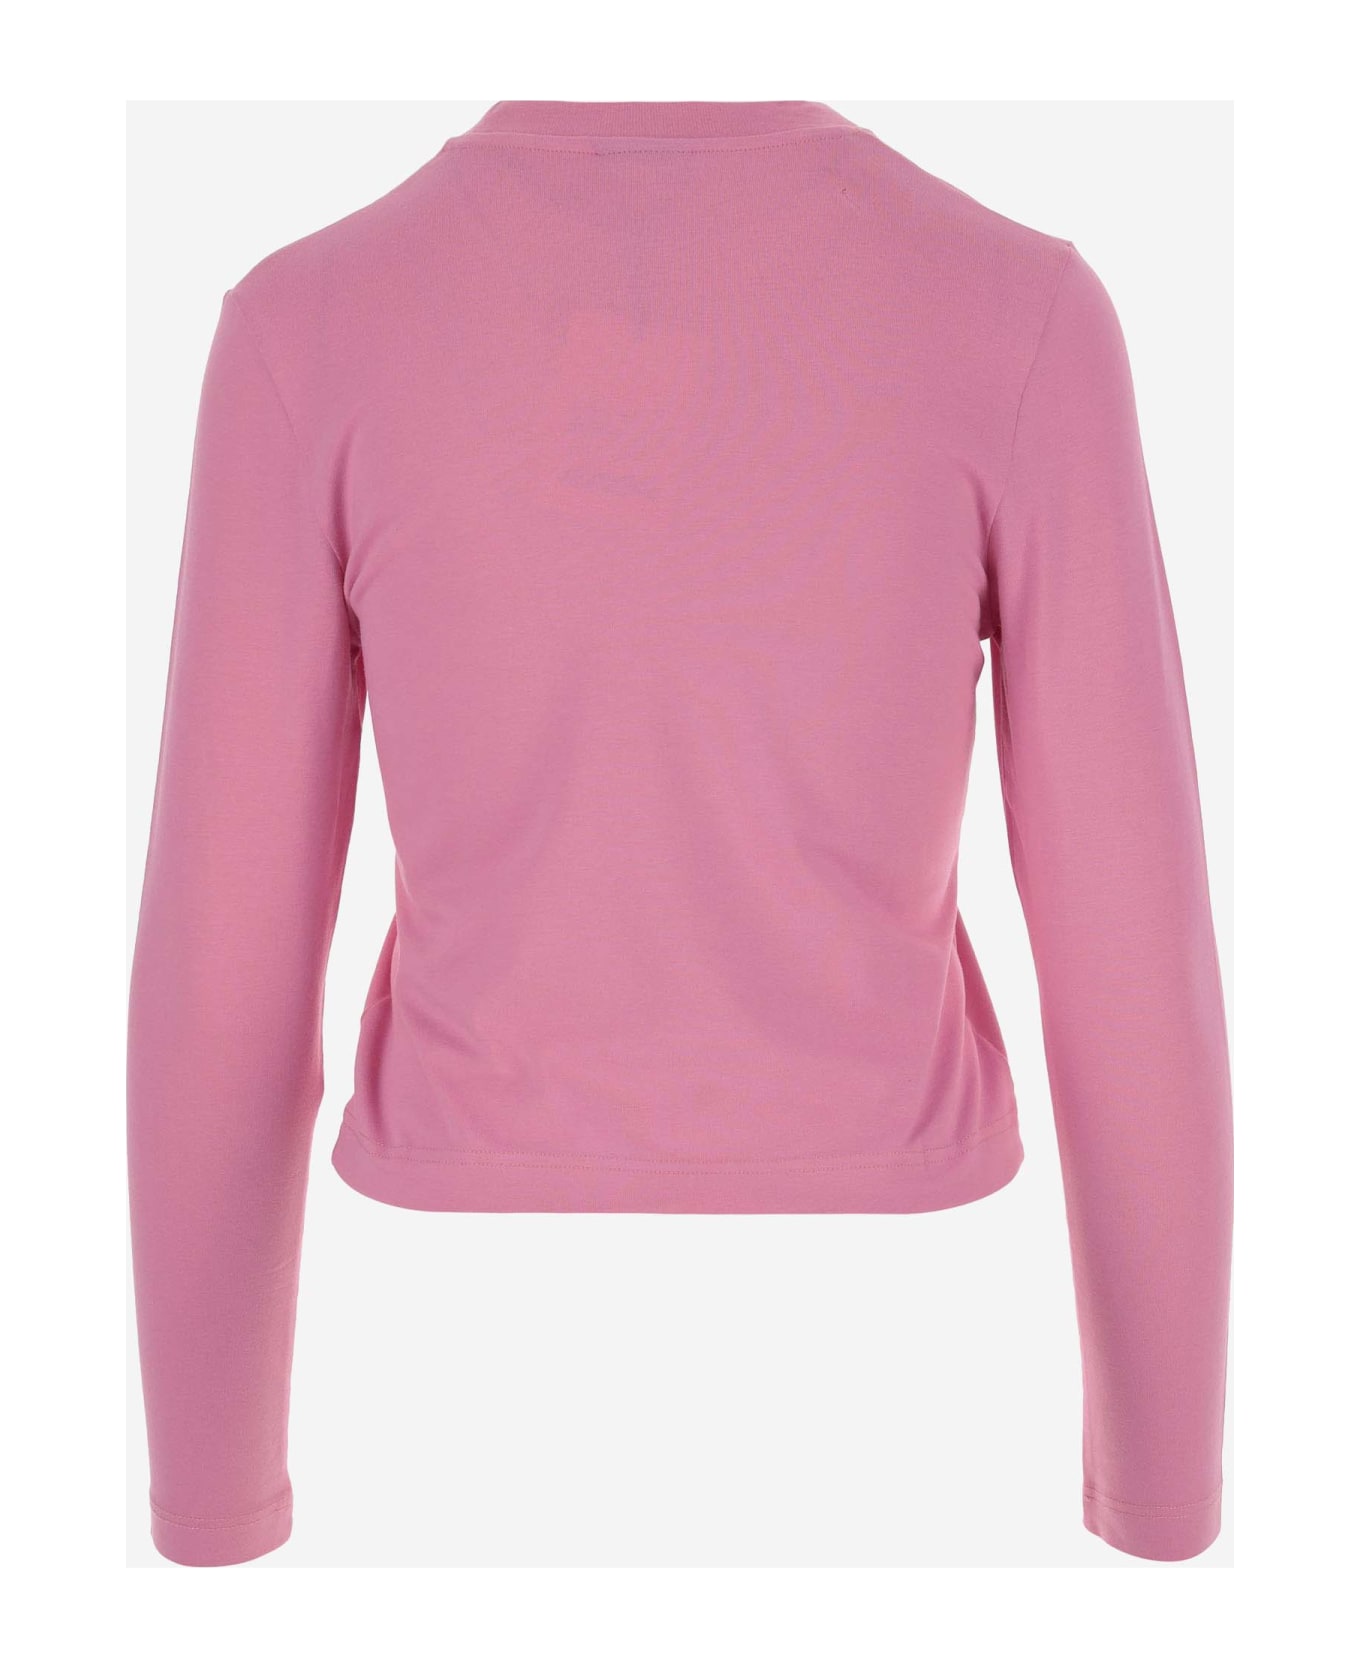 Jacquemus Le T-shirt Gros Grain Manches Longues - Pink Tシャツ